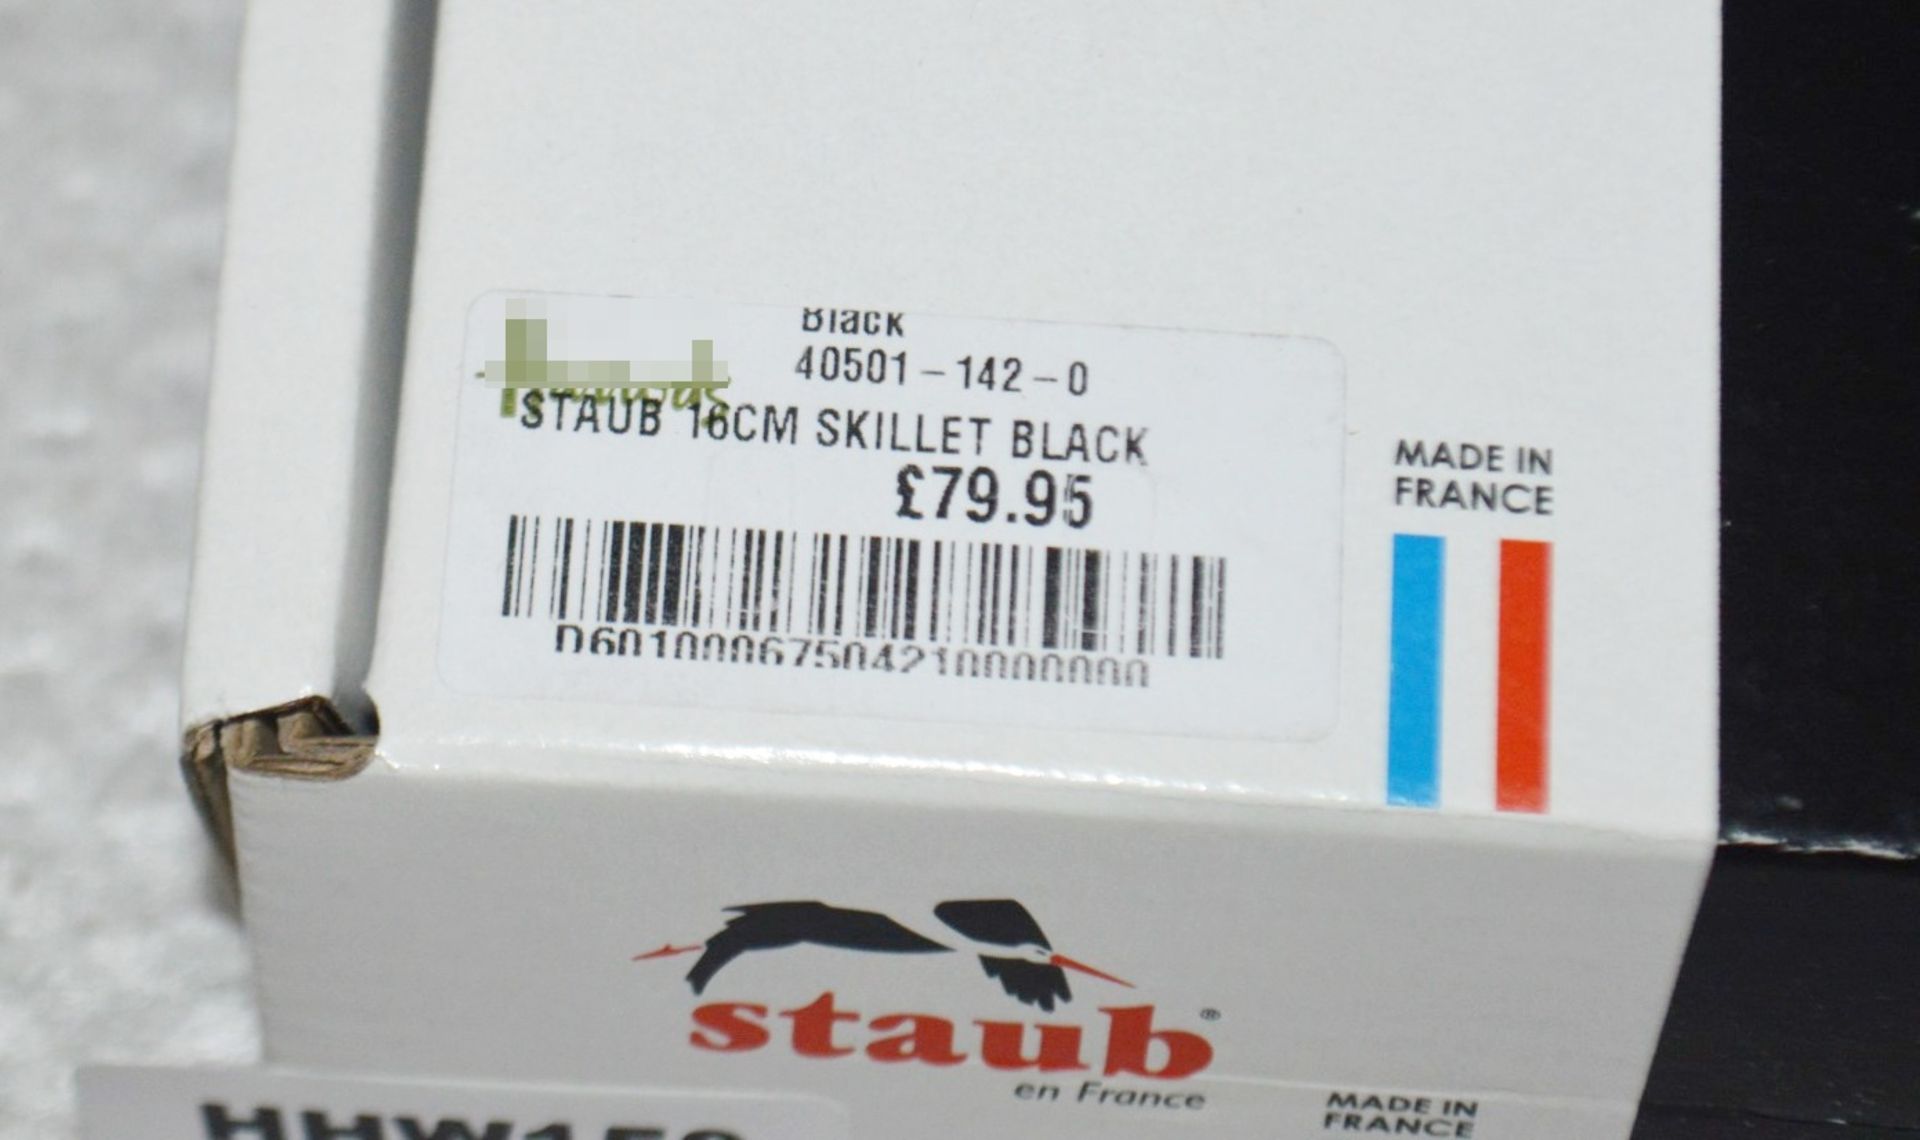 1 x Staub 16cm Skillet In Black - Original RRP £79.99 - Ref: HHW150/NOV21/WH2/C3 - CL987 - Location: - Image 5 of 7